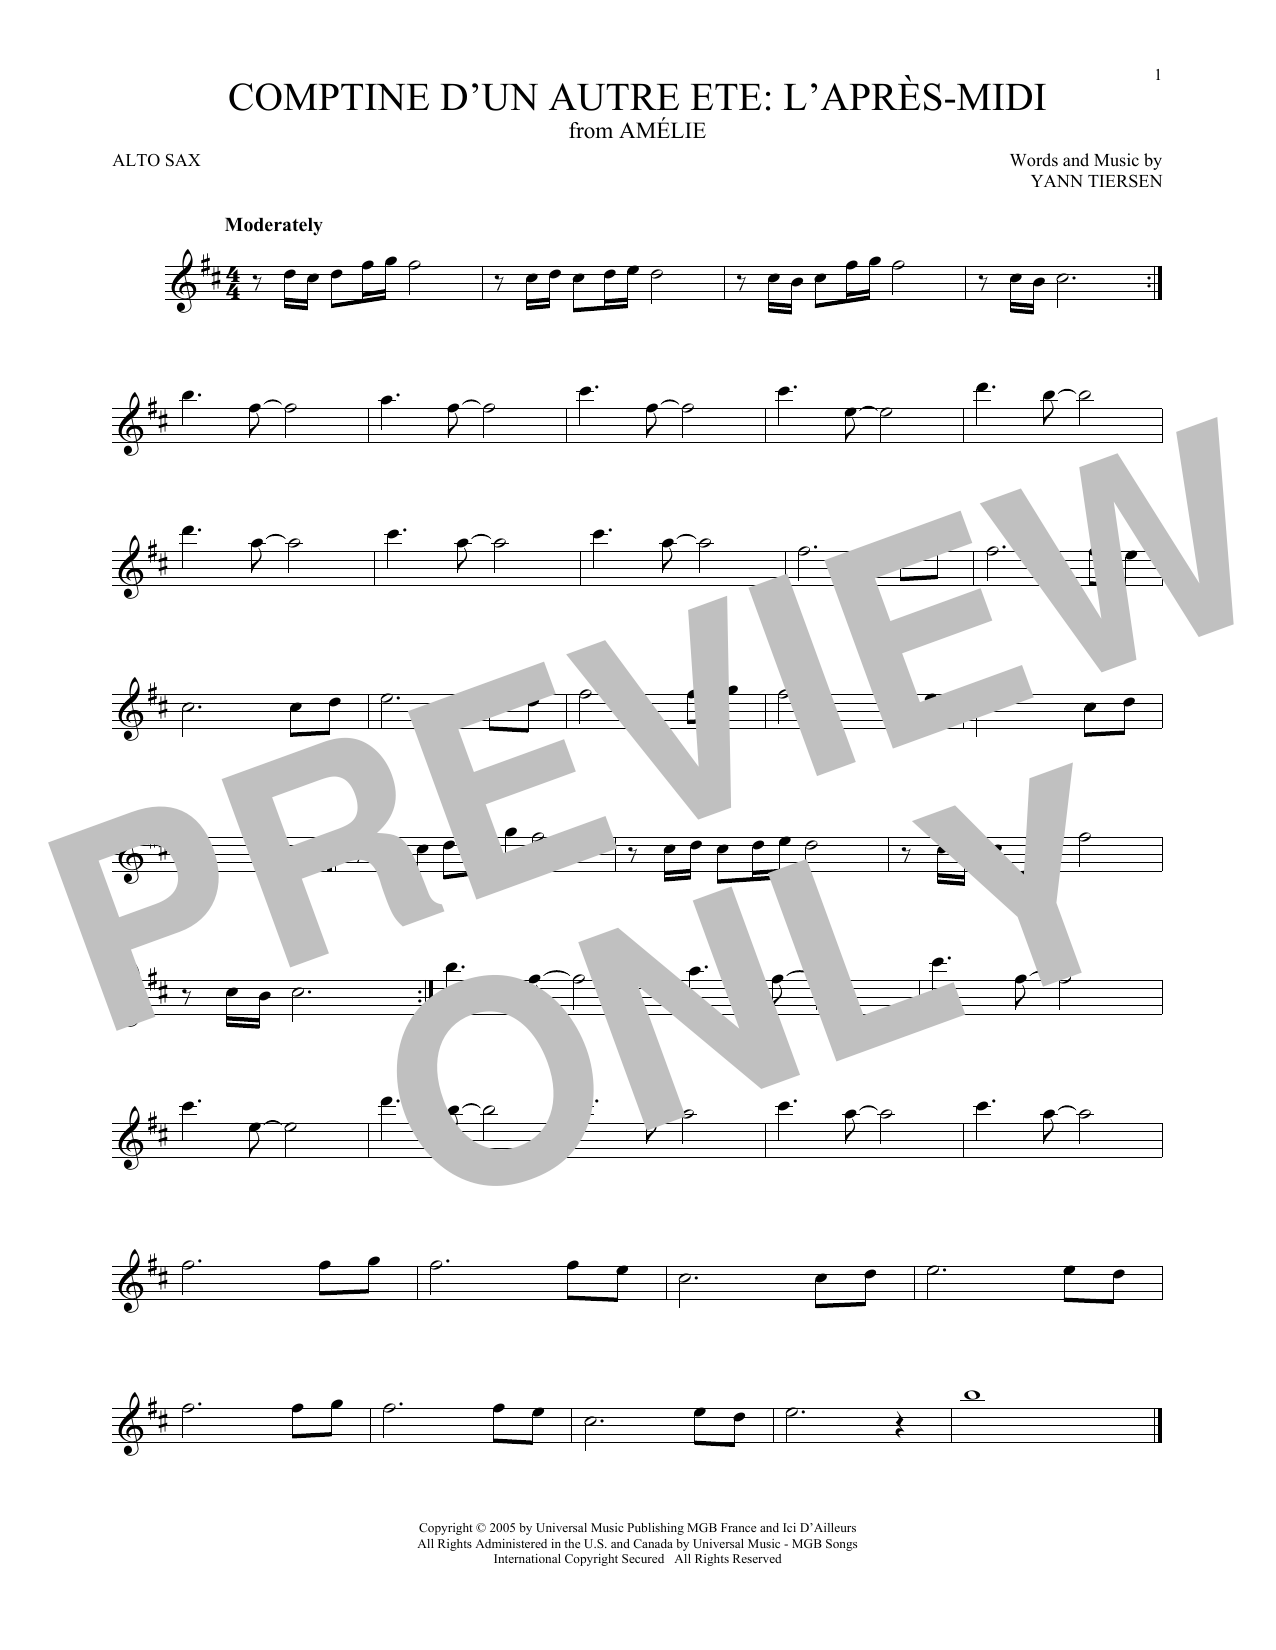 Yann Tiersen Comptine d'un autre été: L'après-midi (from Amelie) Sheet Music Notes & Chords for French Horn Solo - Download or Print PDF